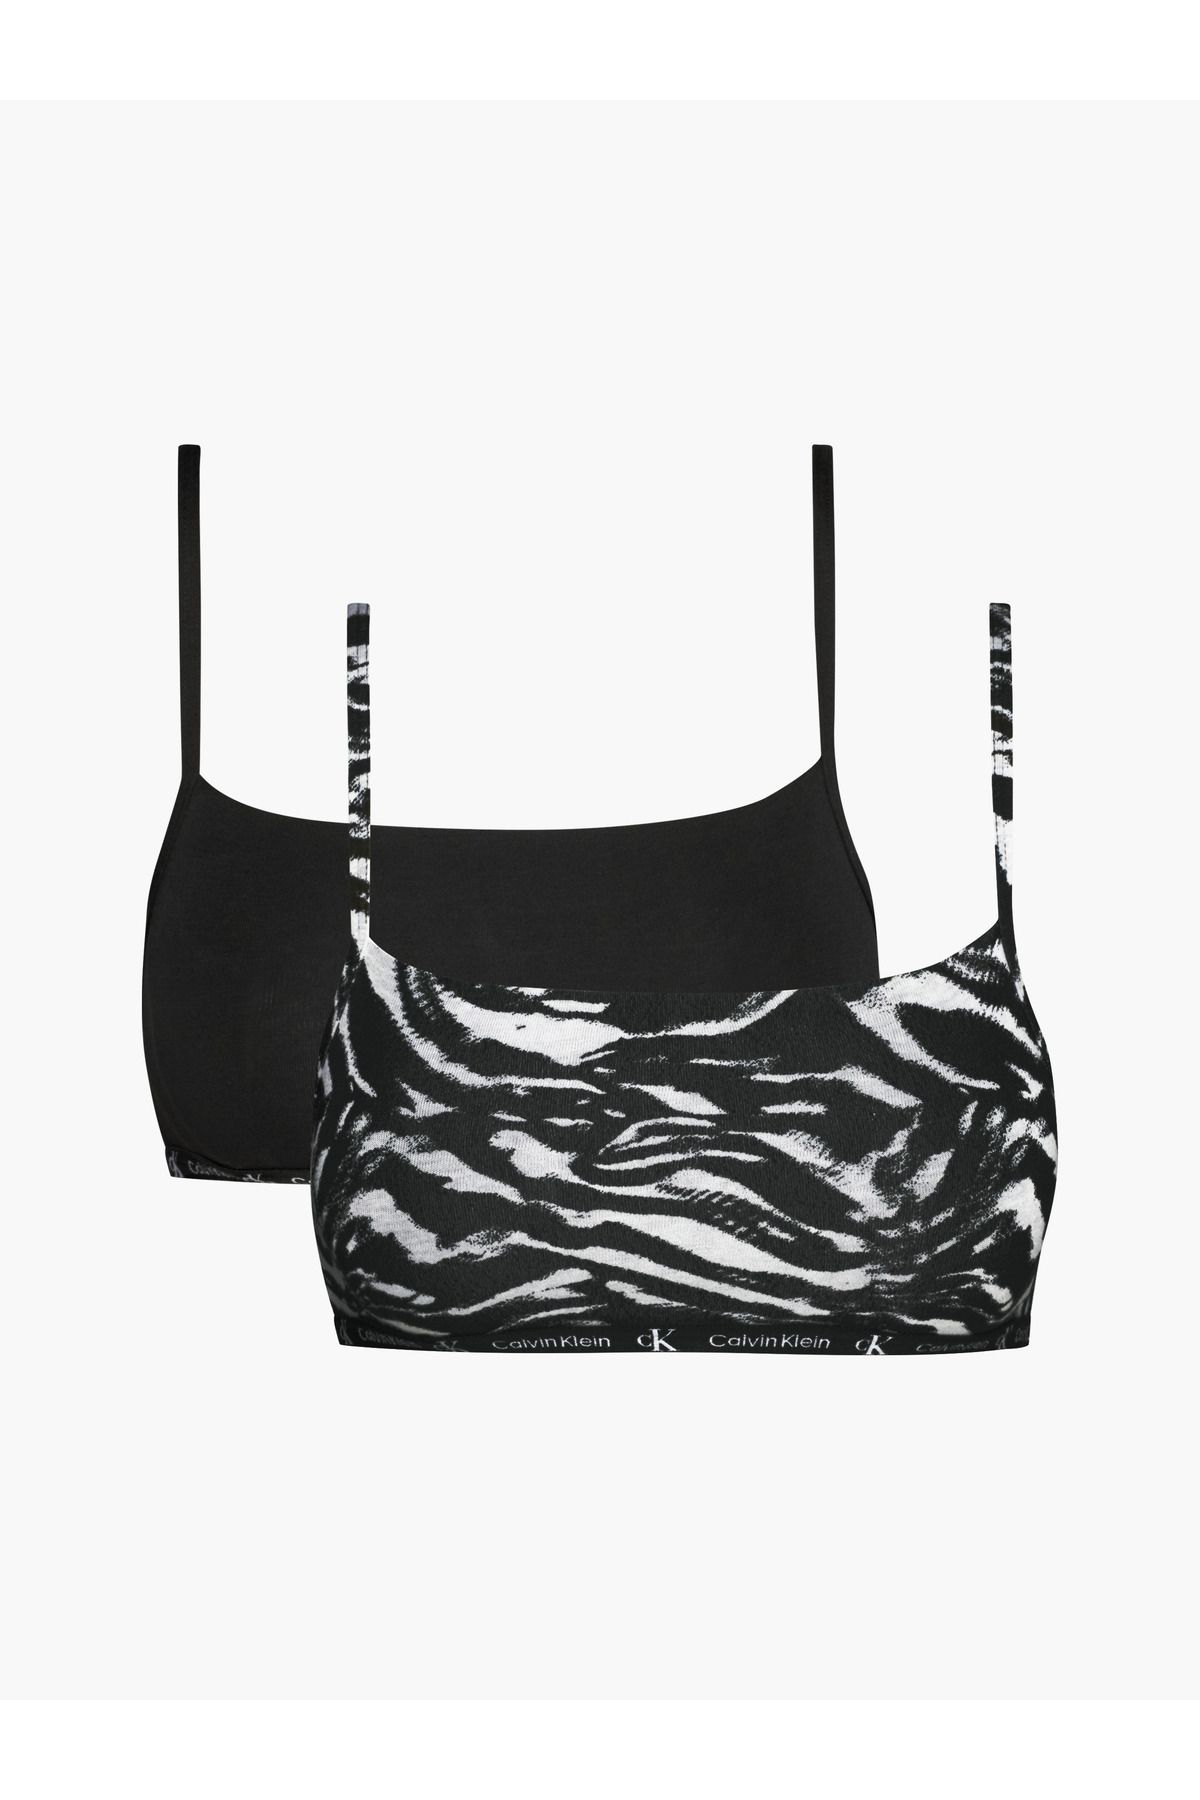 Calvin Klein Kadın Imzalı Elastik Bantlı Siyah-siyah Beyaz Spor Sütyeni 000qf7215e-bık